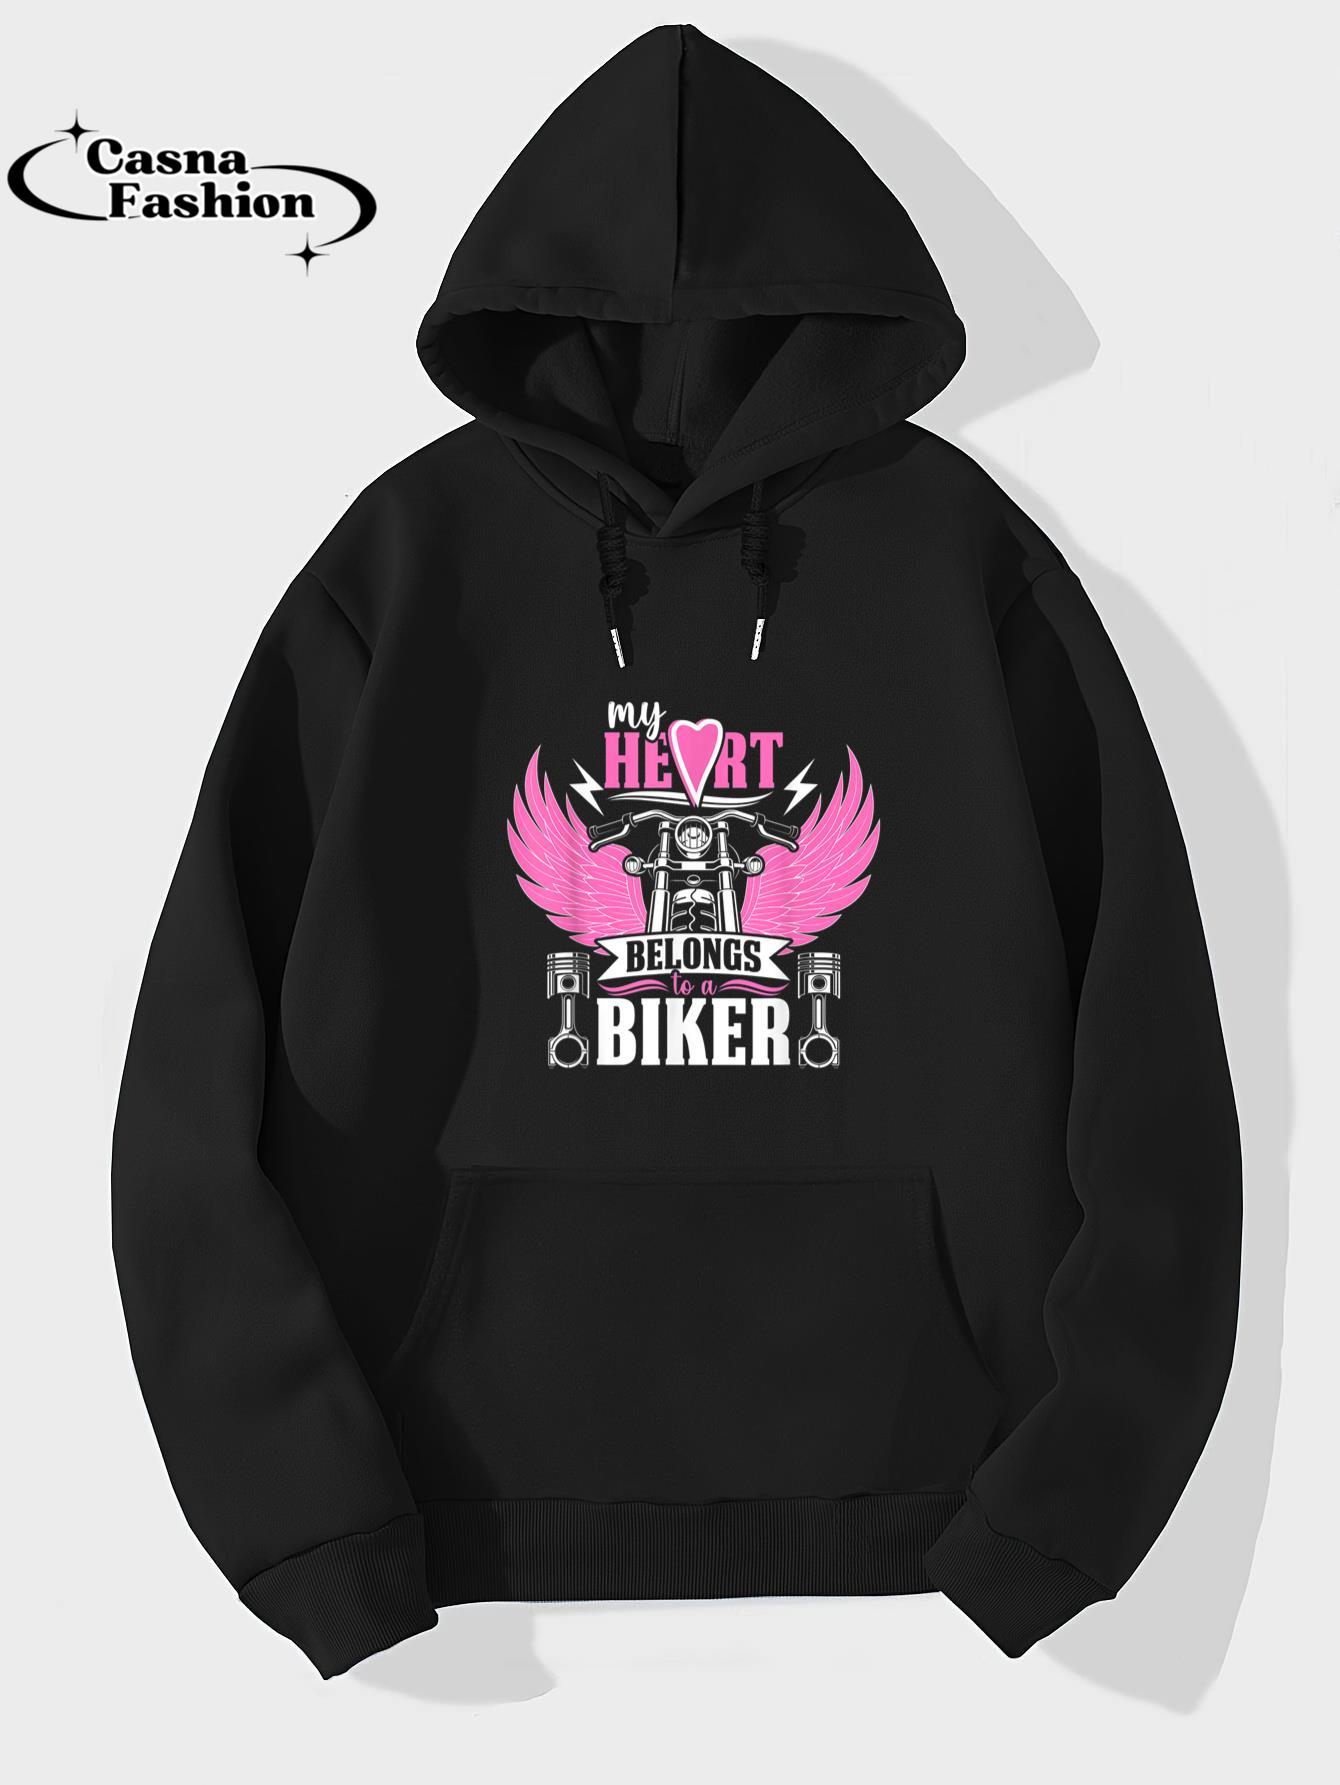 casnafashion_Hoodie_Motorcycle My Heart Belongs To A Biker Girlfriend Wife T-Shirt_hoodie_black hoodie